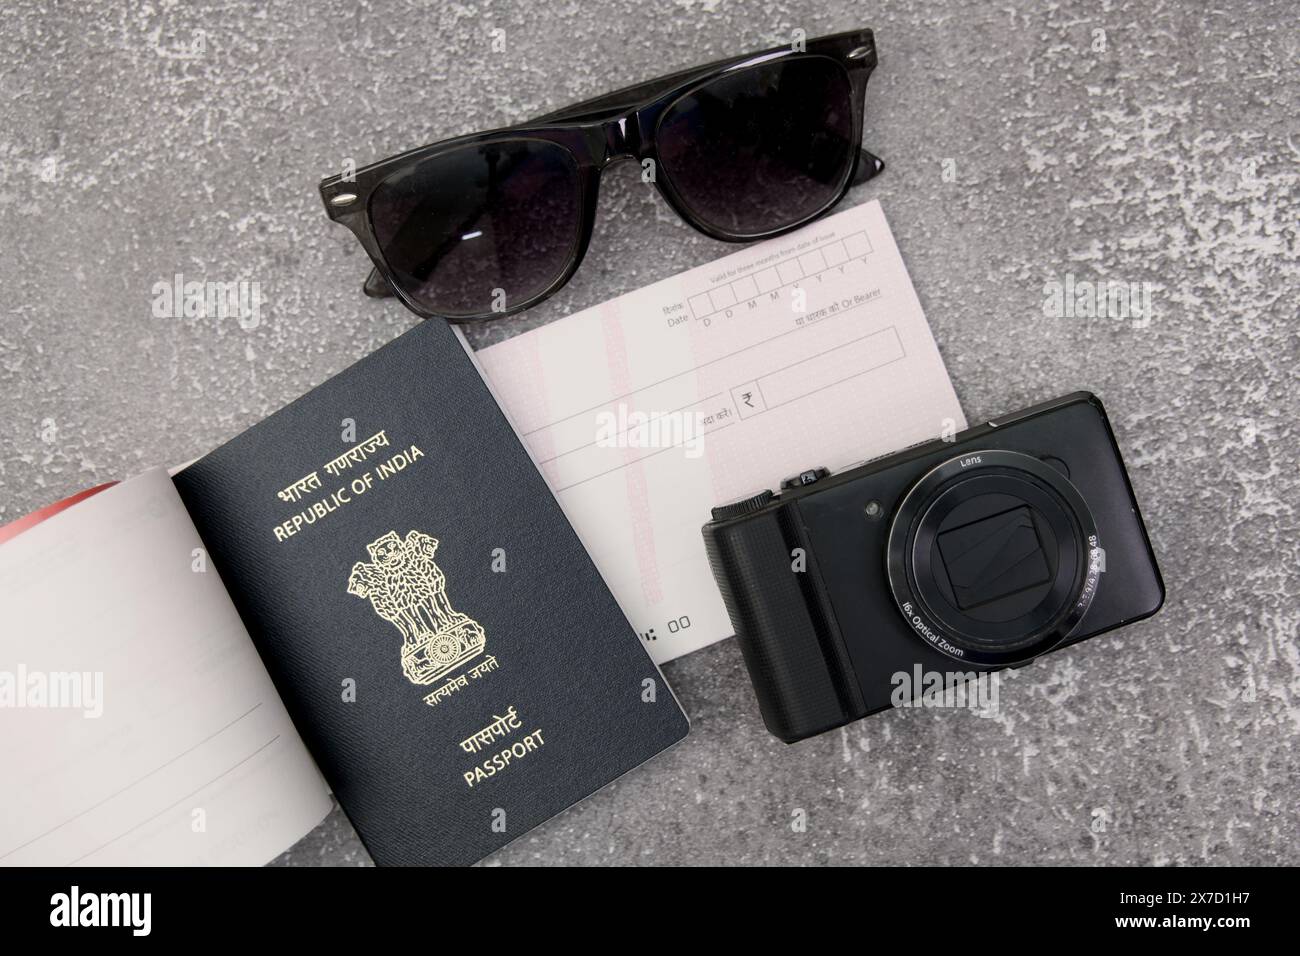 Questa immagine mostra i must di viaggio: Passaporto indiano, macchina fotografica, occhiali da sole e un assegno, tutti disposti su una superficie piatta in pietra grigia. Foto Stock